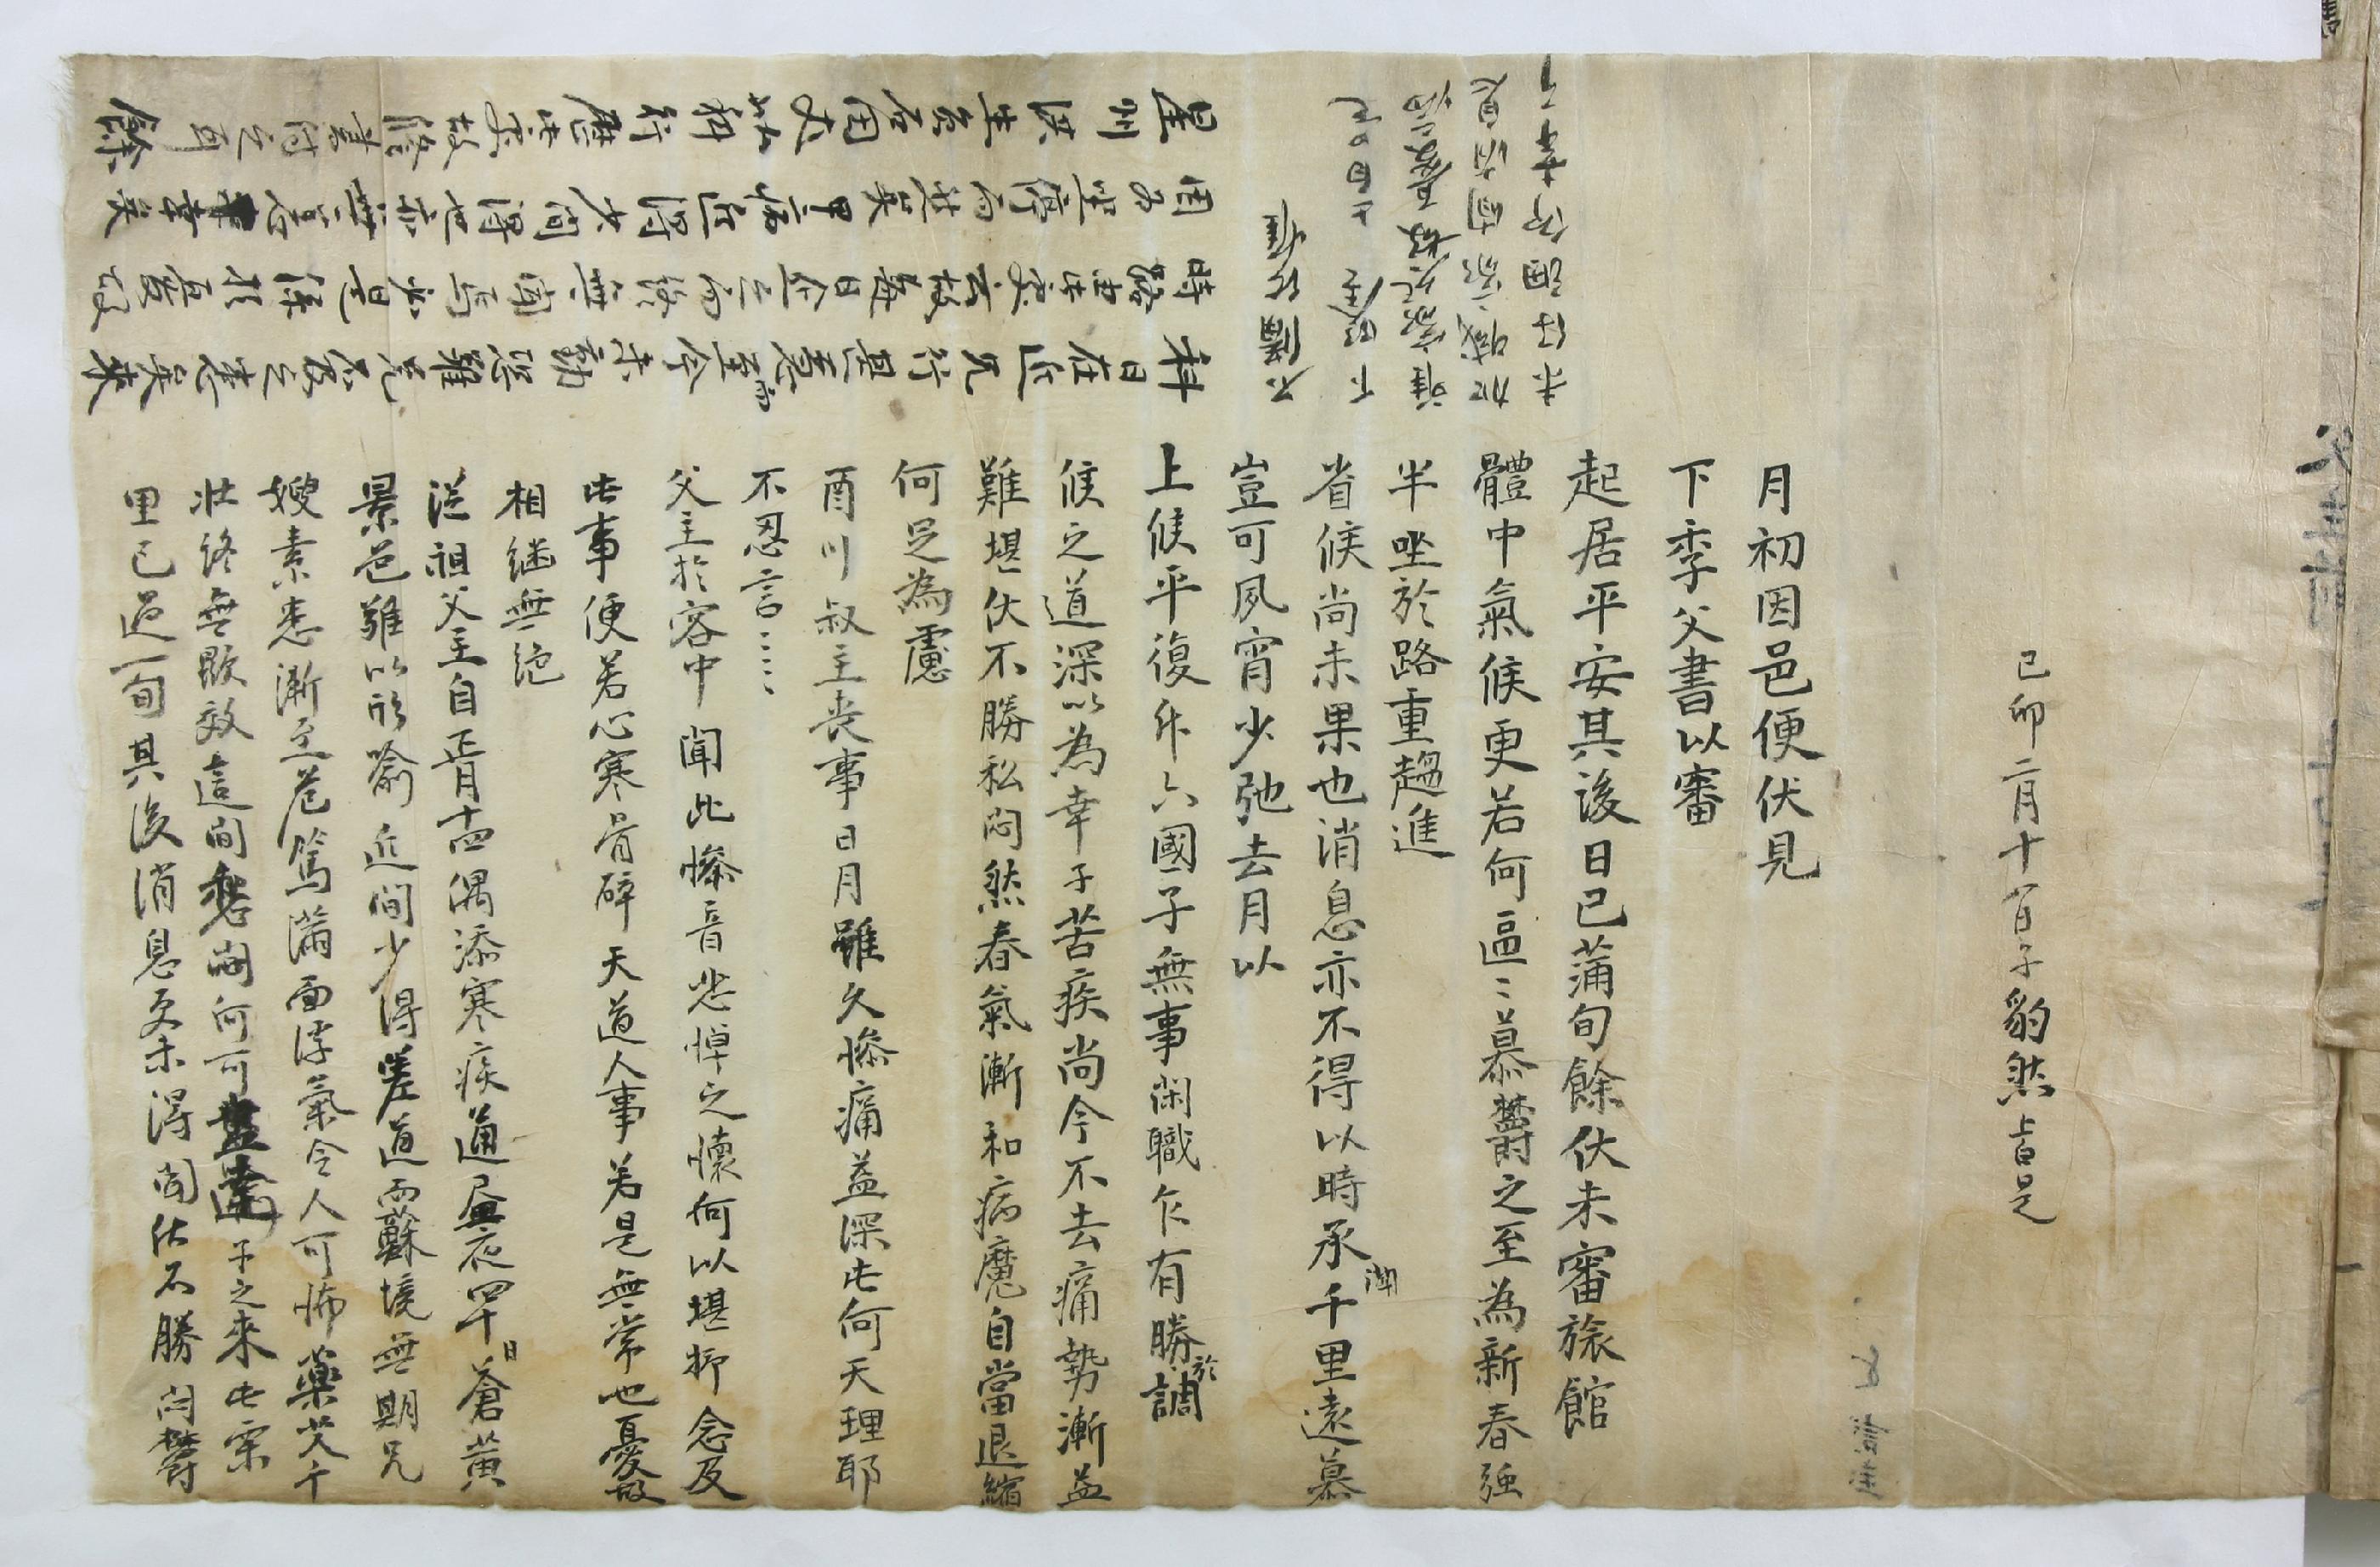 조표연(趙豹然)이 1759년에 전적(典籍)으로 승진한 아버지를 경하하기 위해 보낸 편지